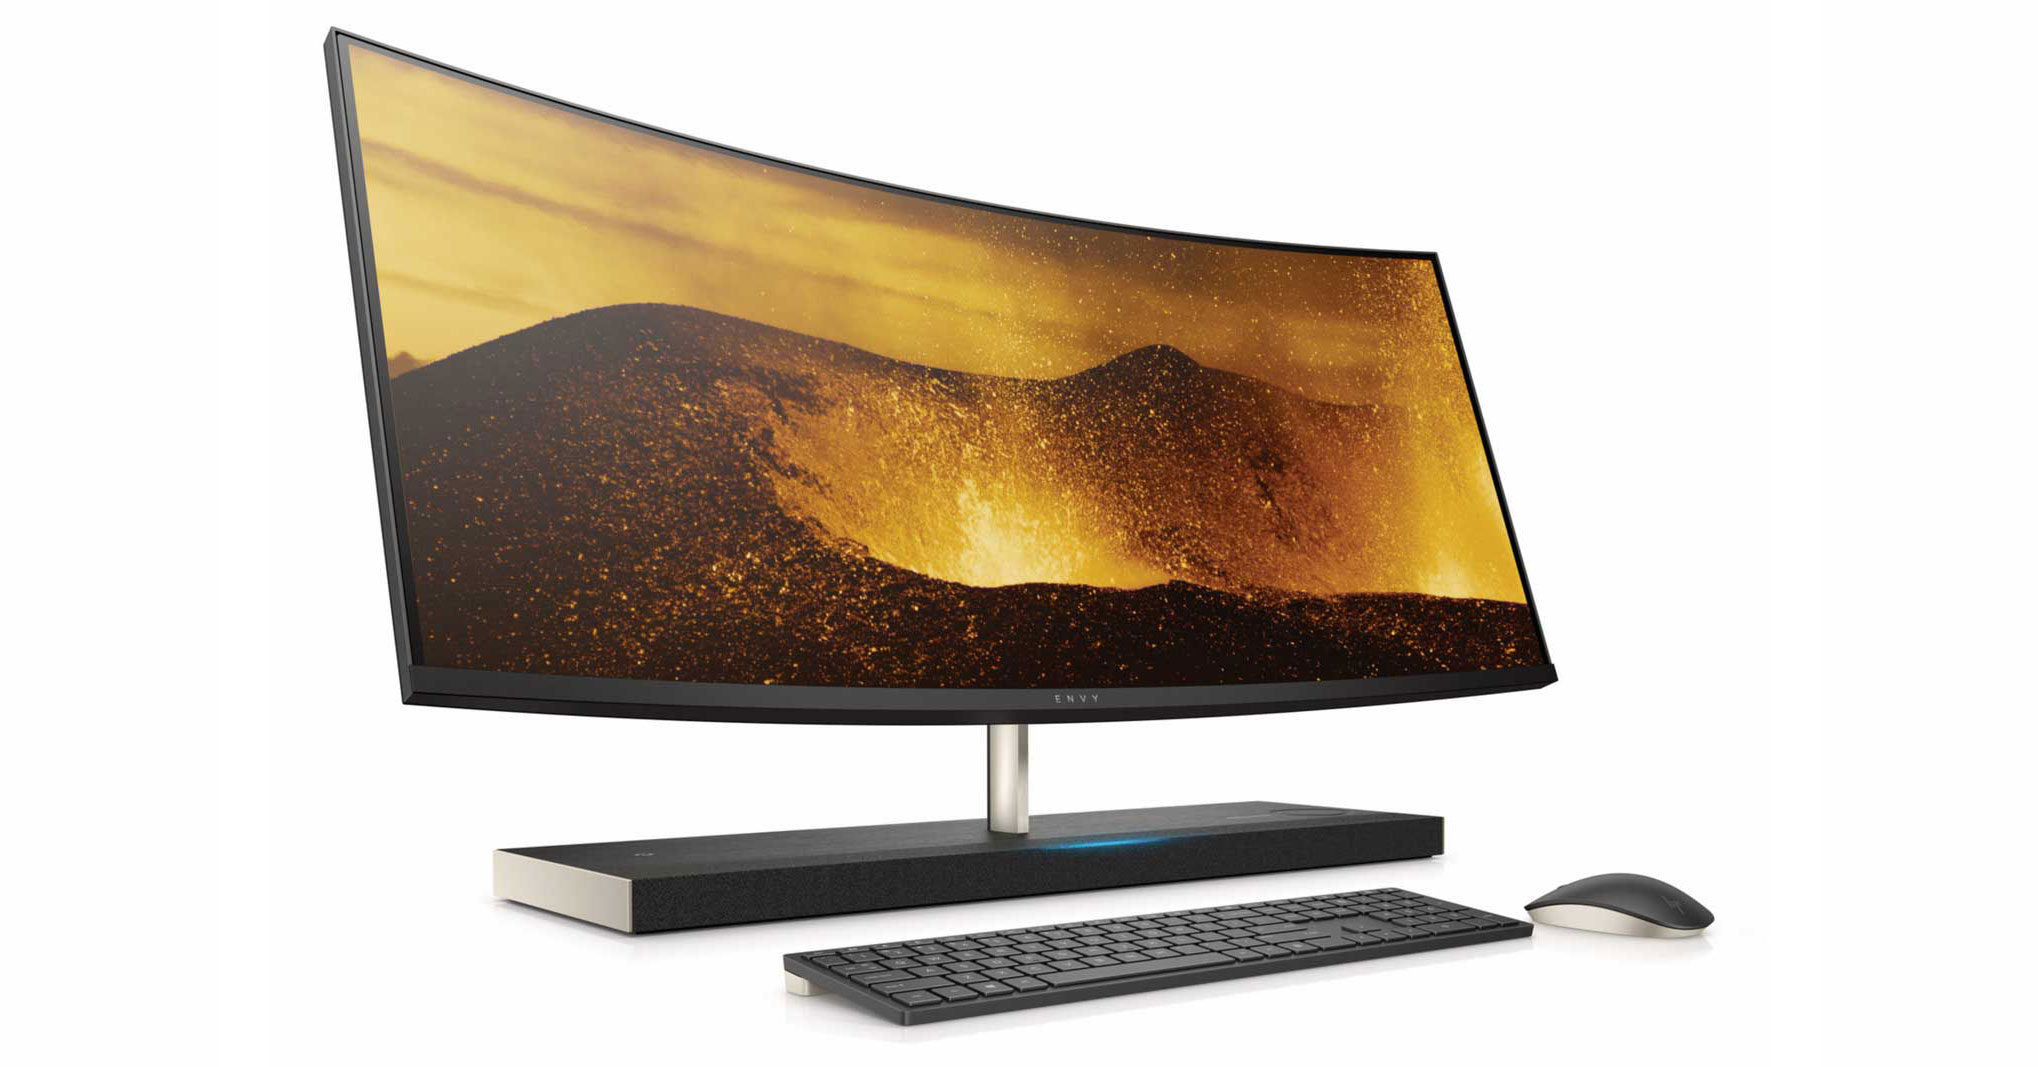 HP Envy 34: All-in-One màn hình cong, Core i7+, GTX 1050, đế có sạc không dây